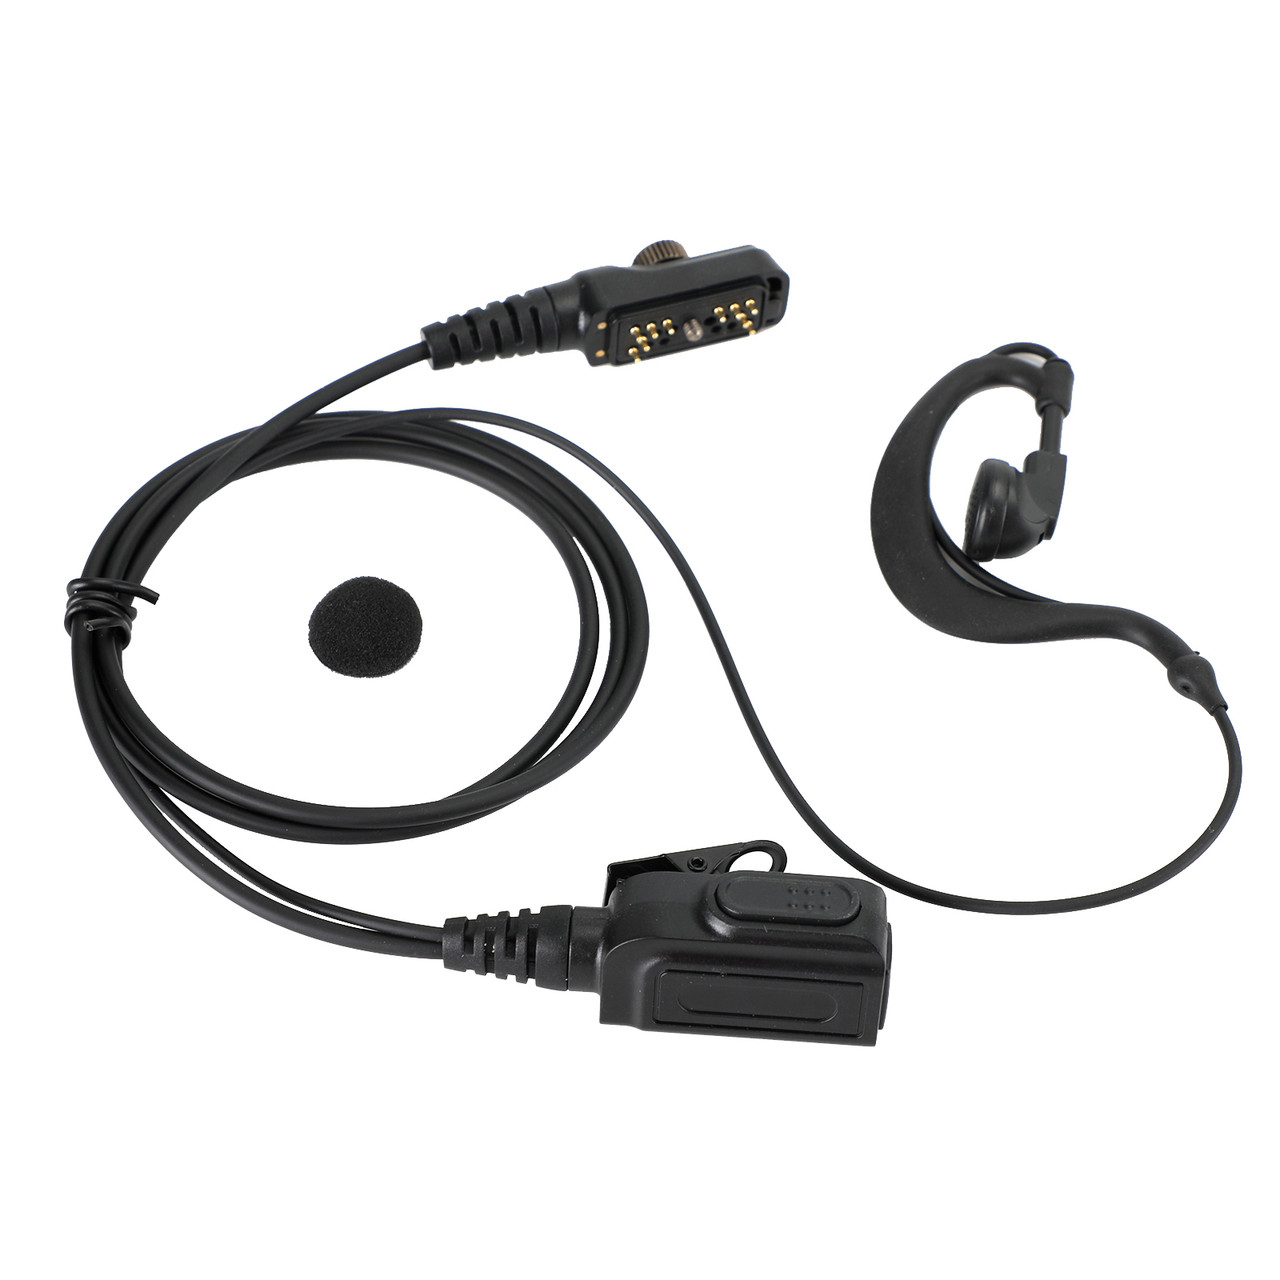 G-Shape Earpiece Headset Oval PTT MIC For HYT PD780 PD700 PD700G PD702G PD705G